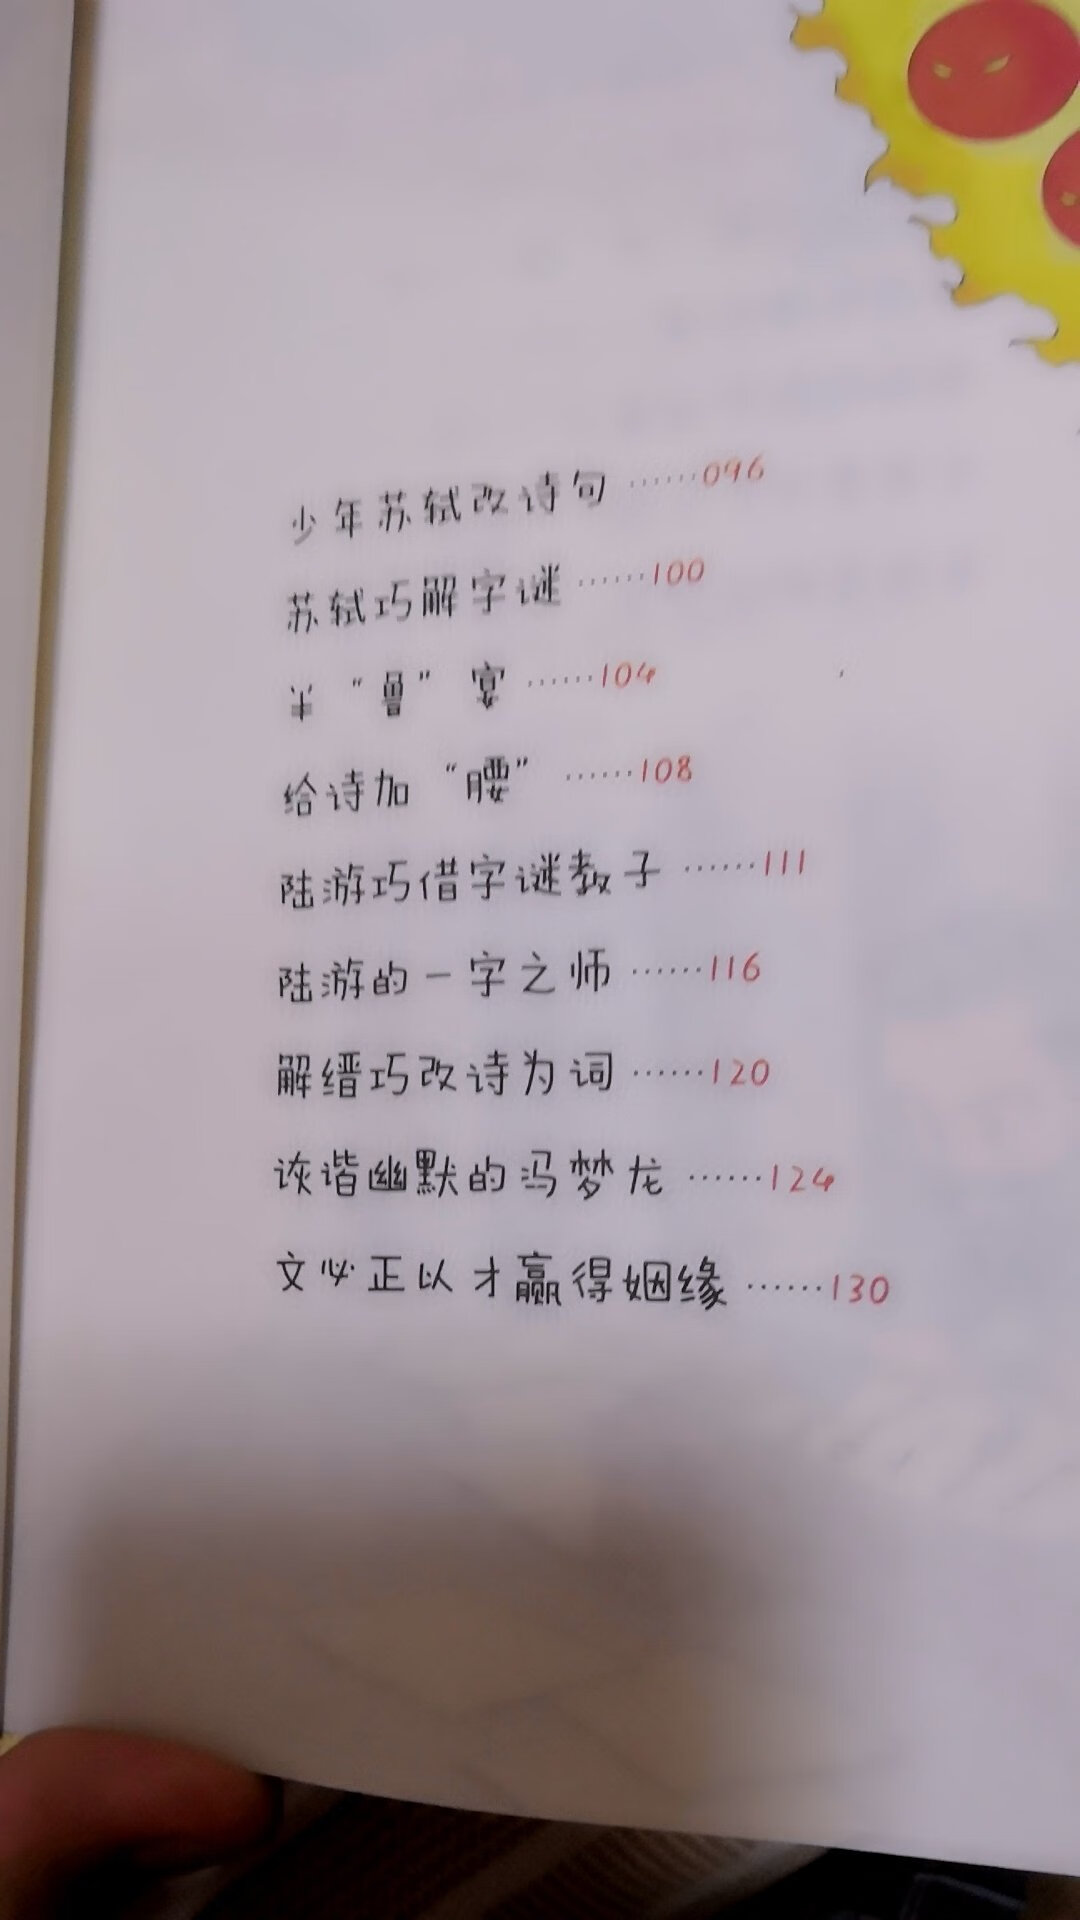 一本关于汉字的历史故事。故事里穿插讲一些汉字的来历。